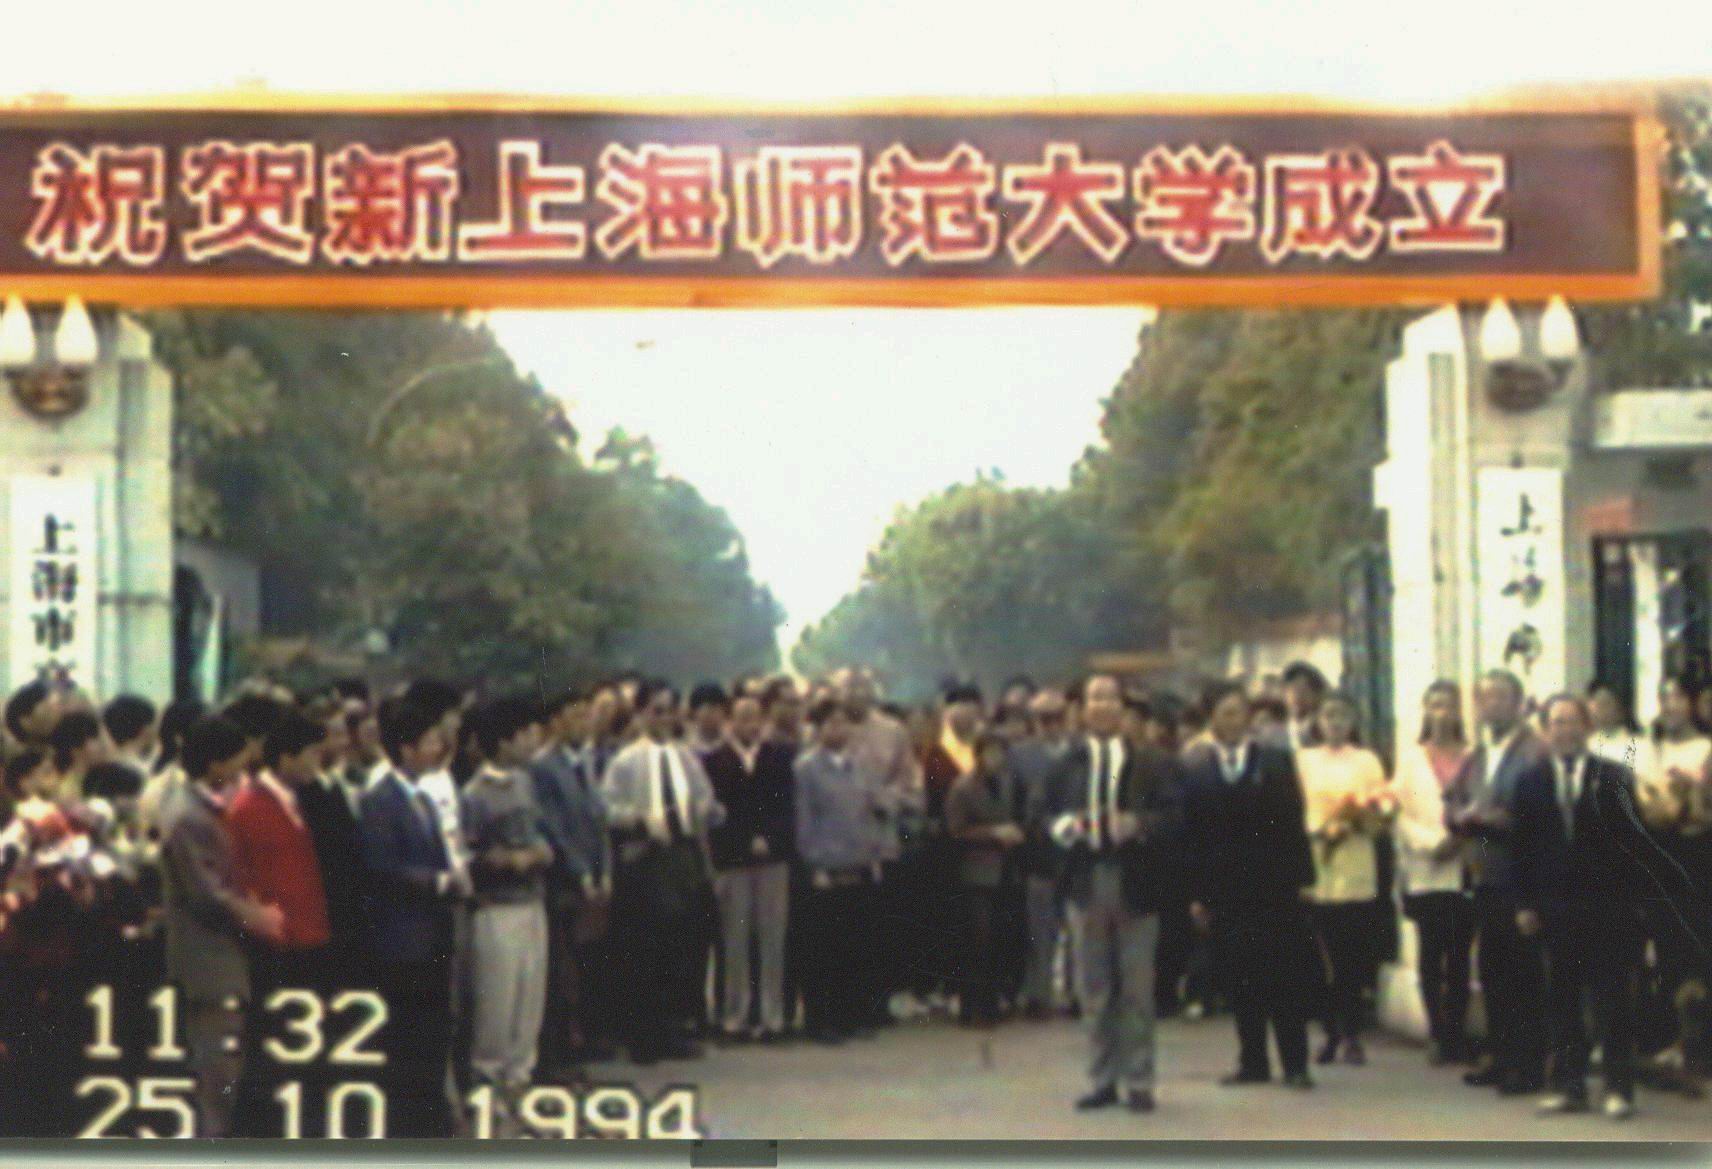 1994年與上海技術師範學院合併成立新的上海師範大學